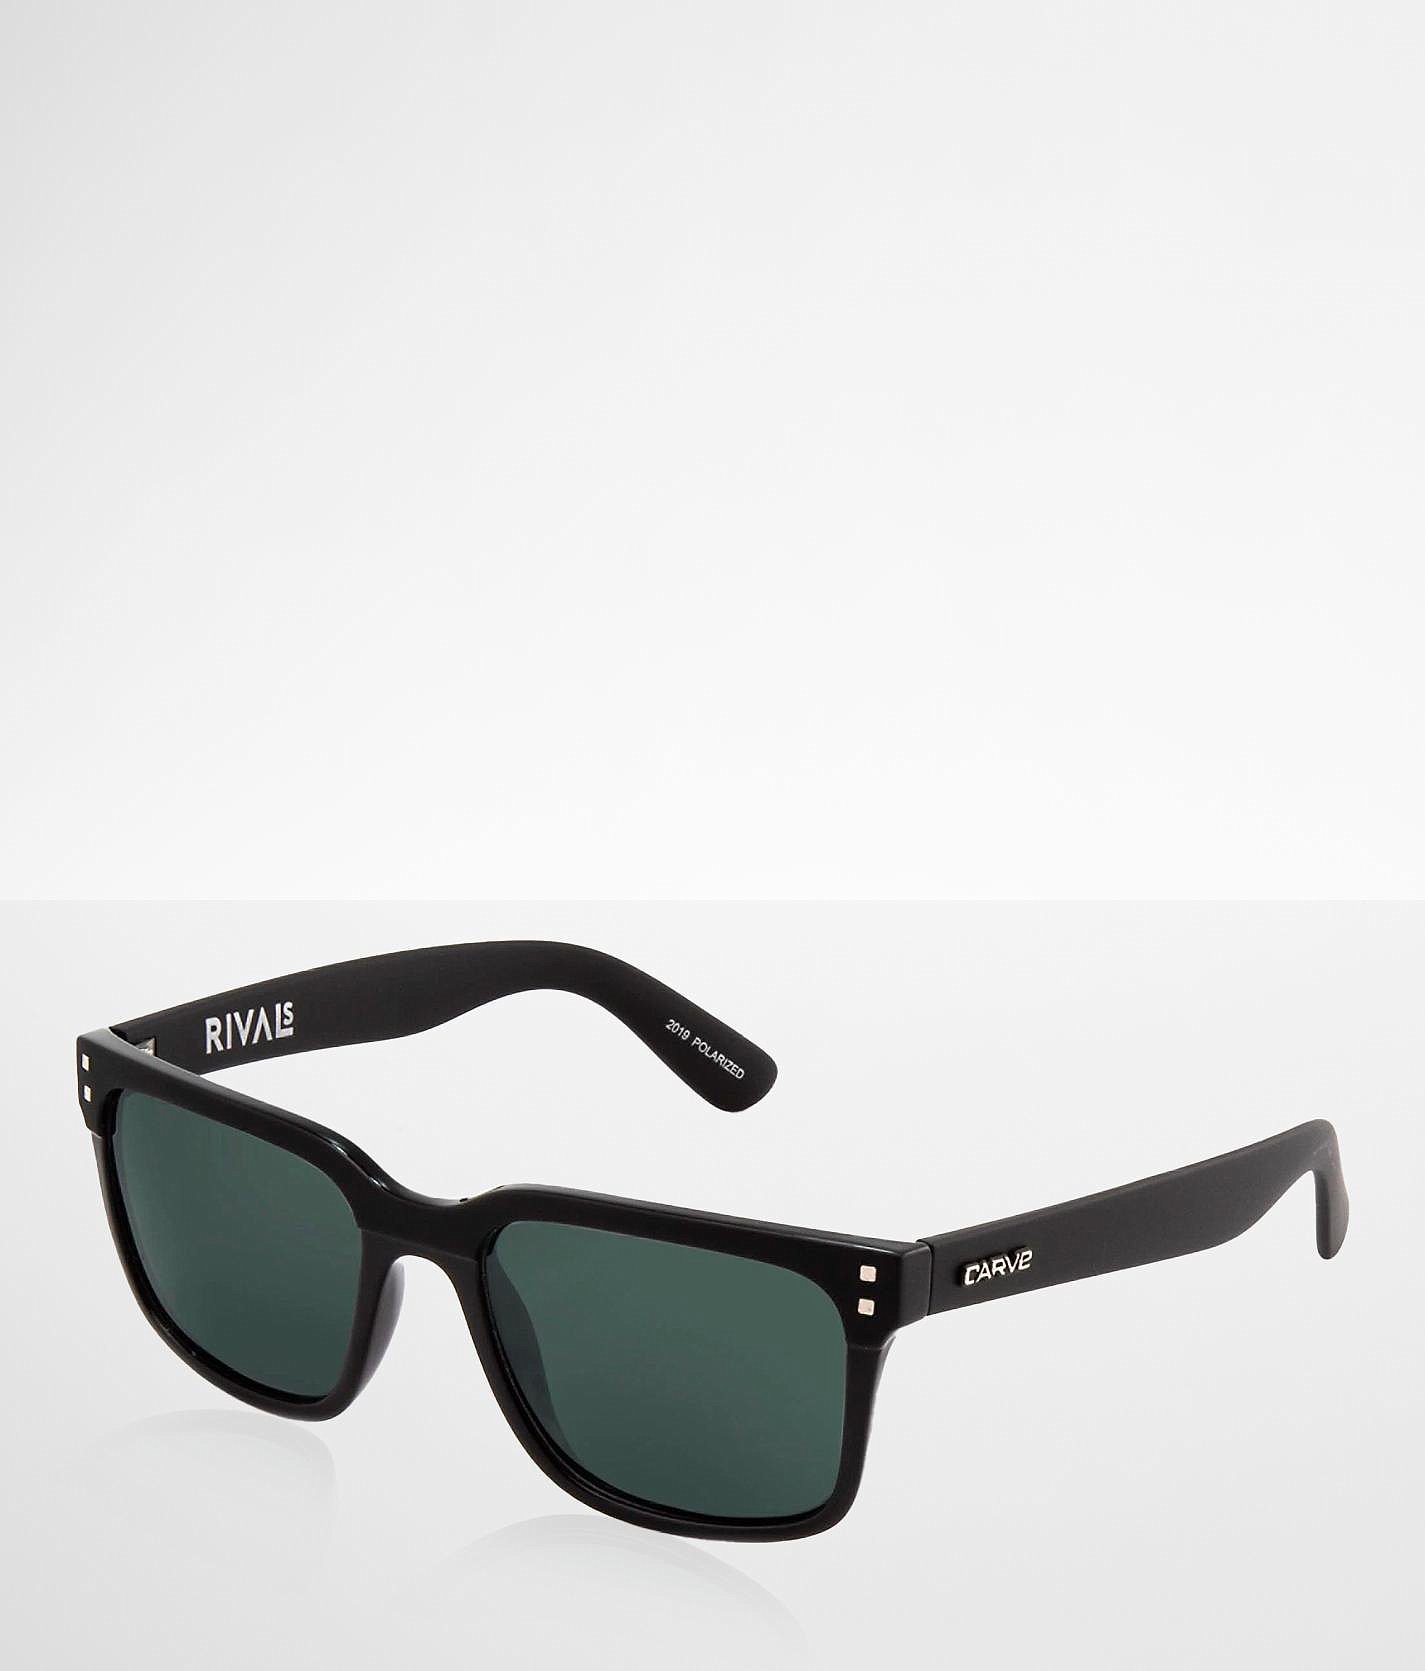 Carve Rivals Polarized Sunglasses - Men's Sunglasses & Glasses in Matte Black | Buckle